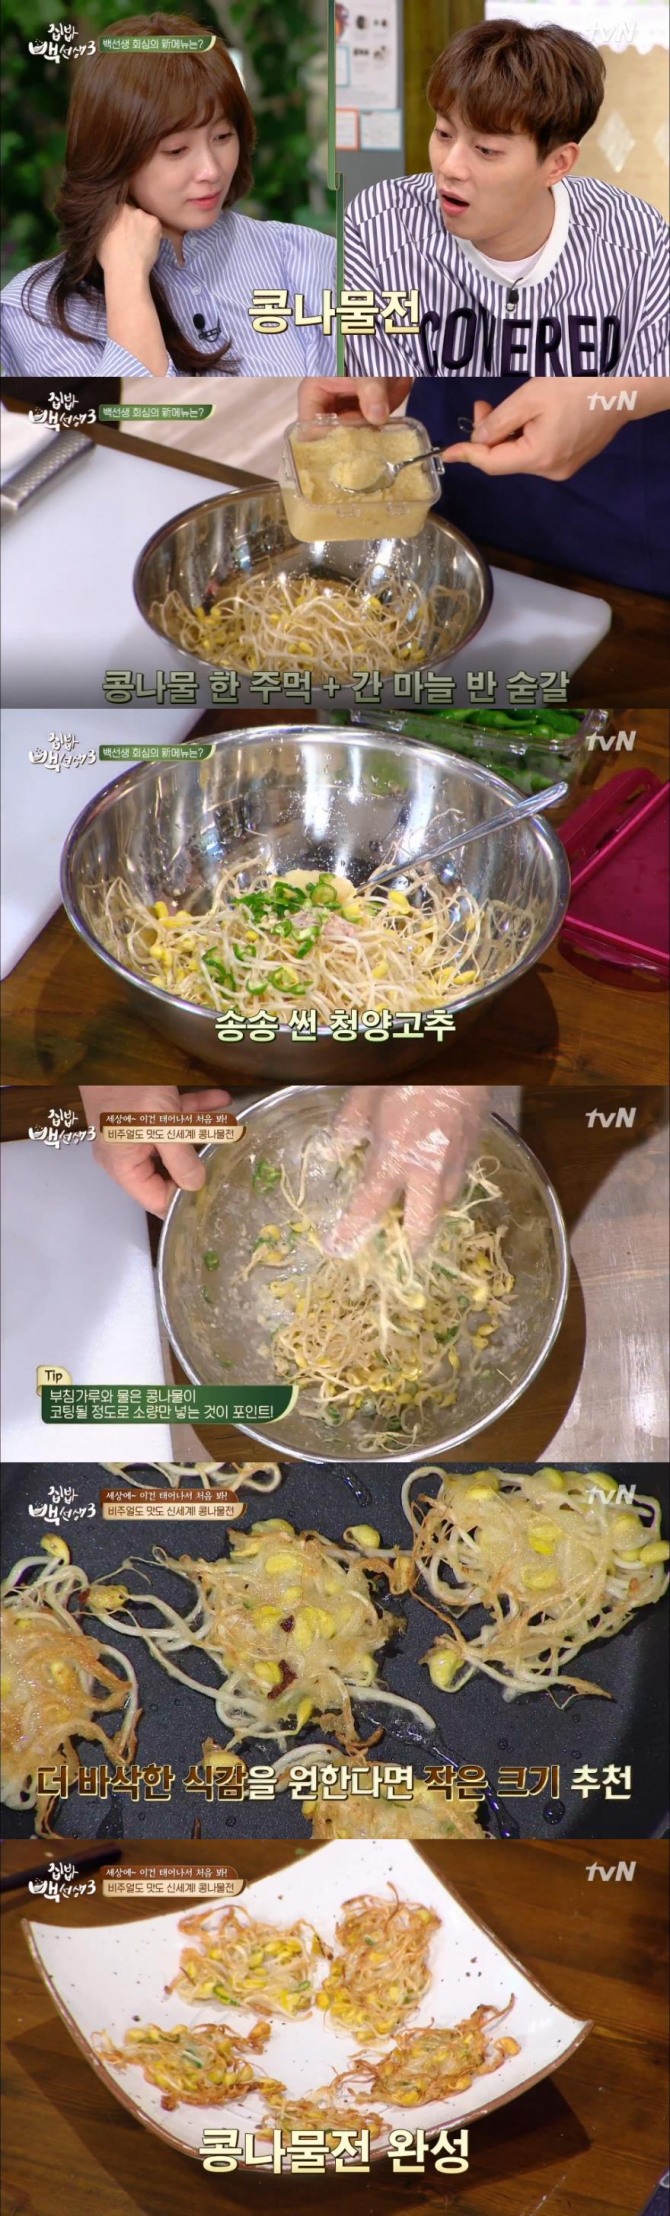 7일 방송된 tvN '집밥 백선생3'에서 백종원은 콩나물을 이용한 신메뉴로 콩나물전을 소개했다./사진=tvN 방송 캡처